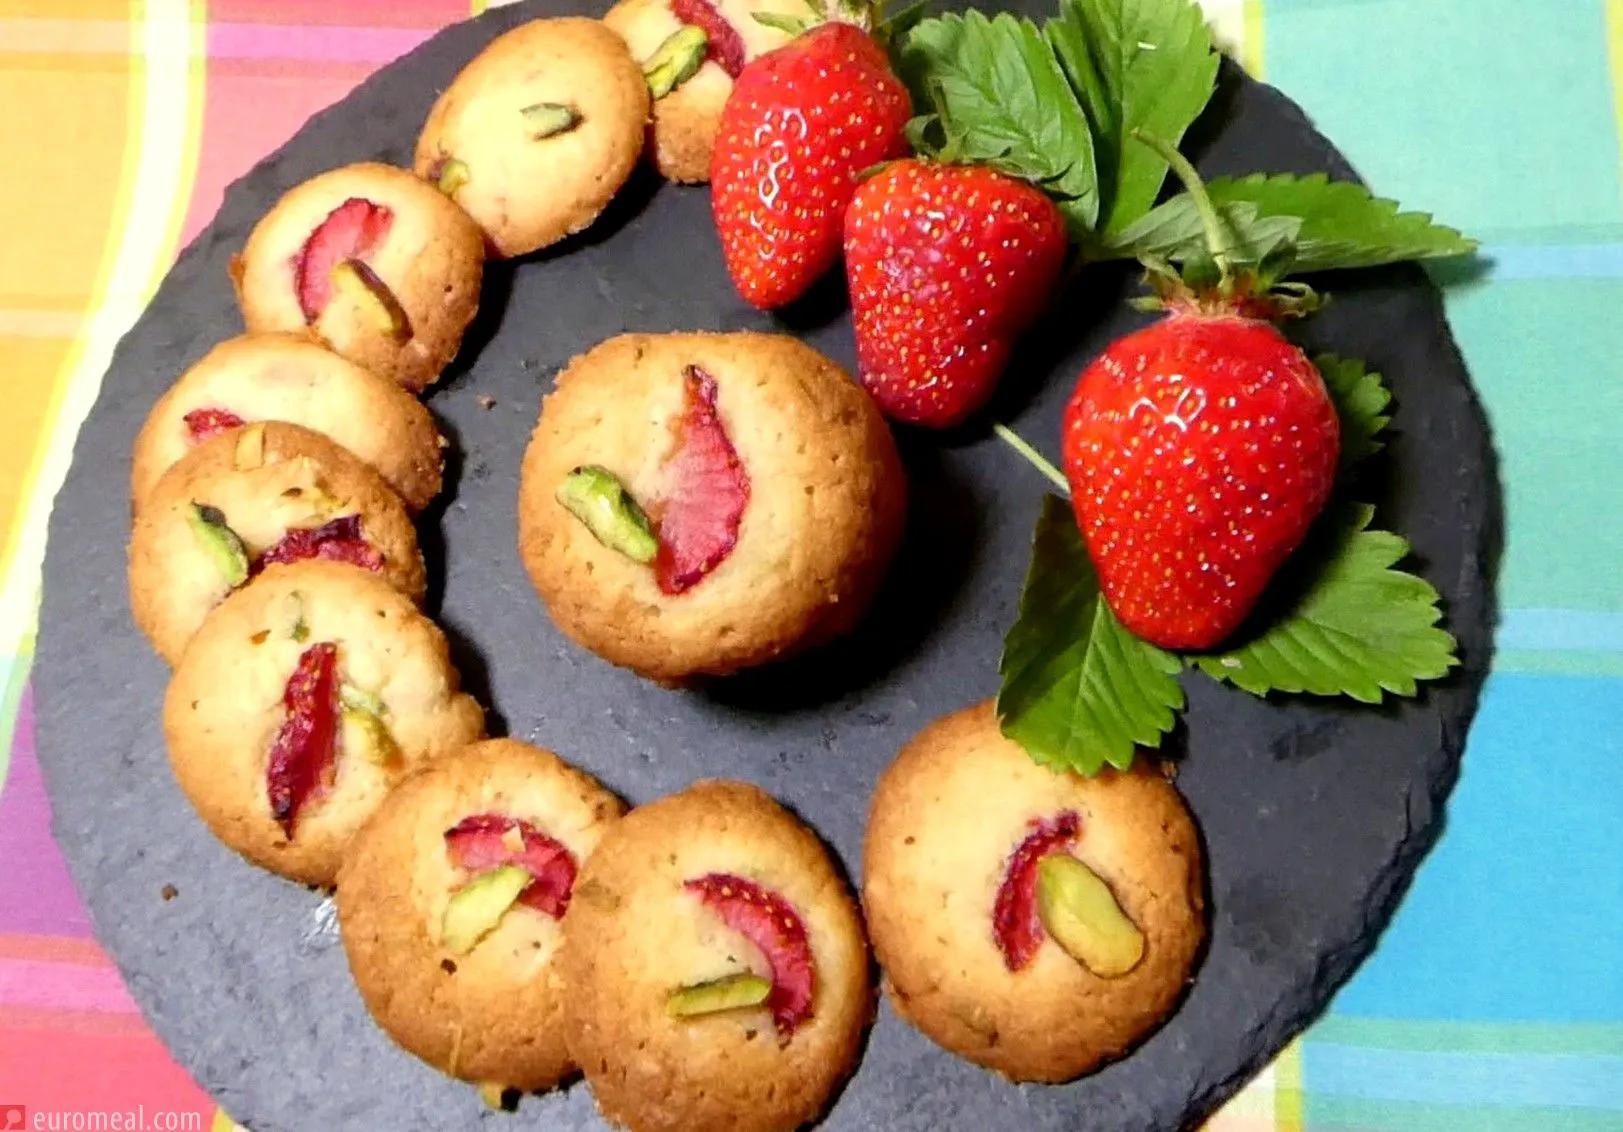 Erdbeer Pistazien Cookies mit weißer Schokolade - euromeal.com